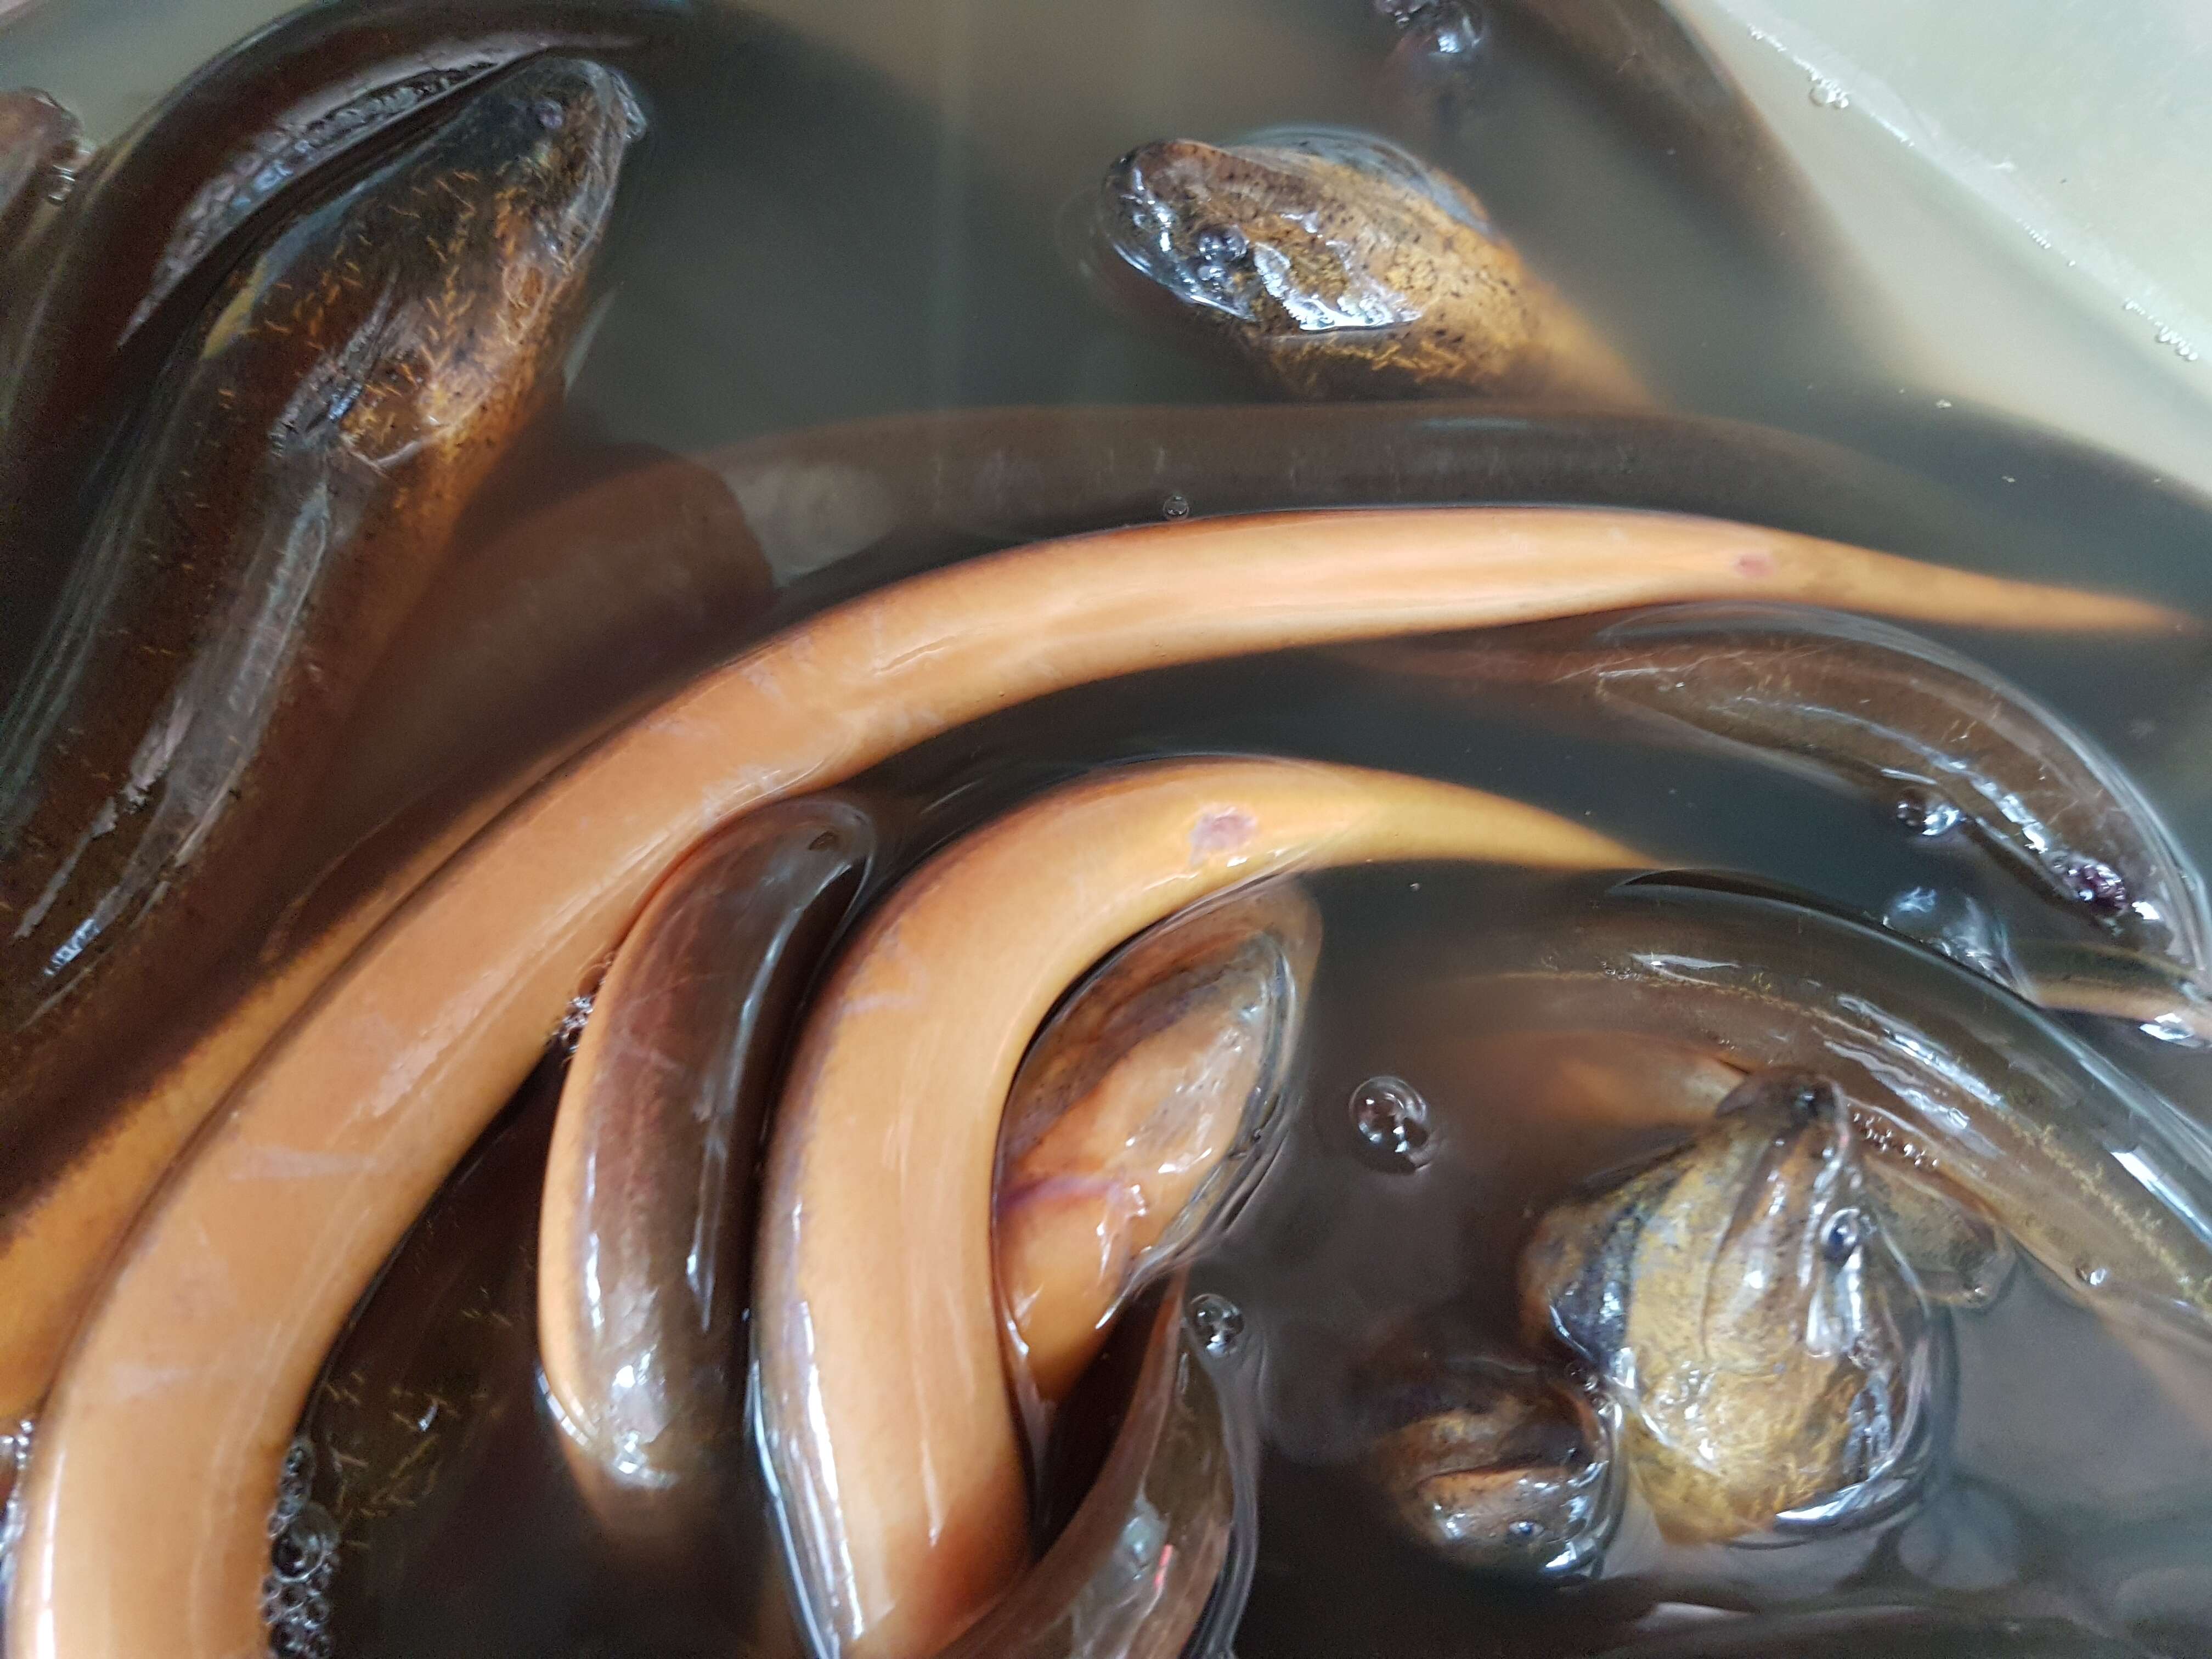 Image of Asian swamp eel